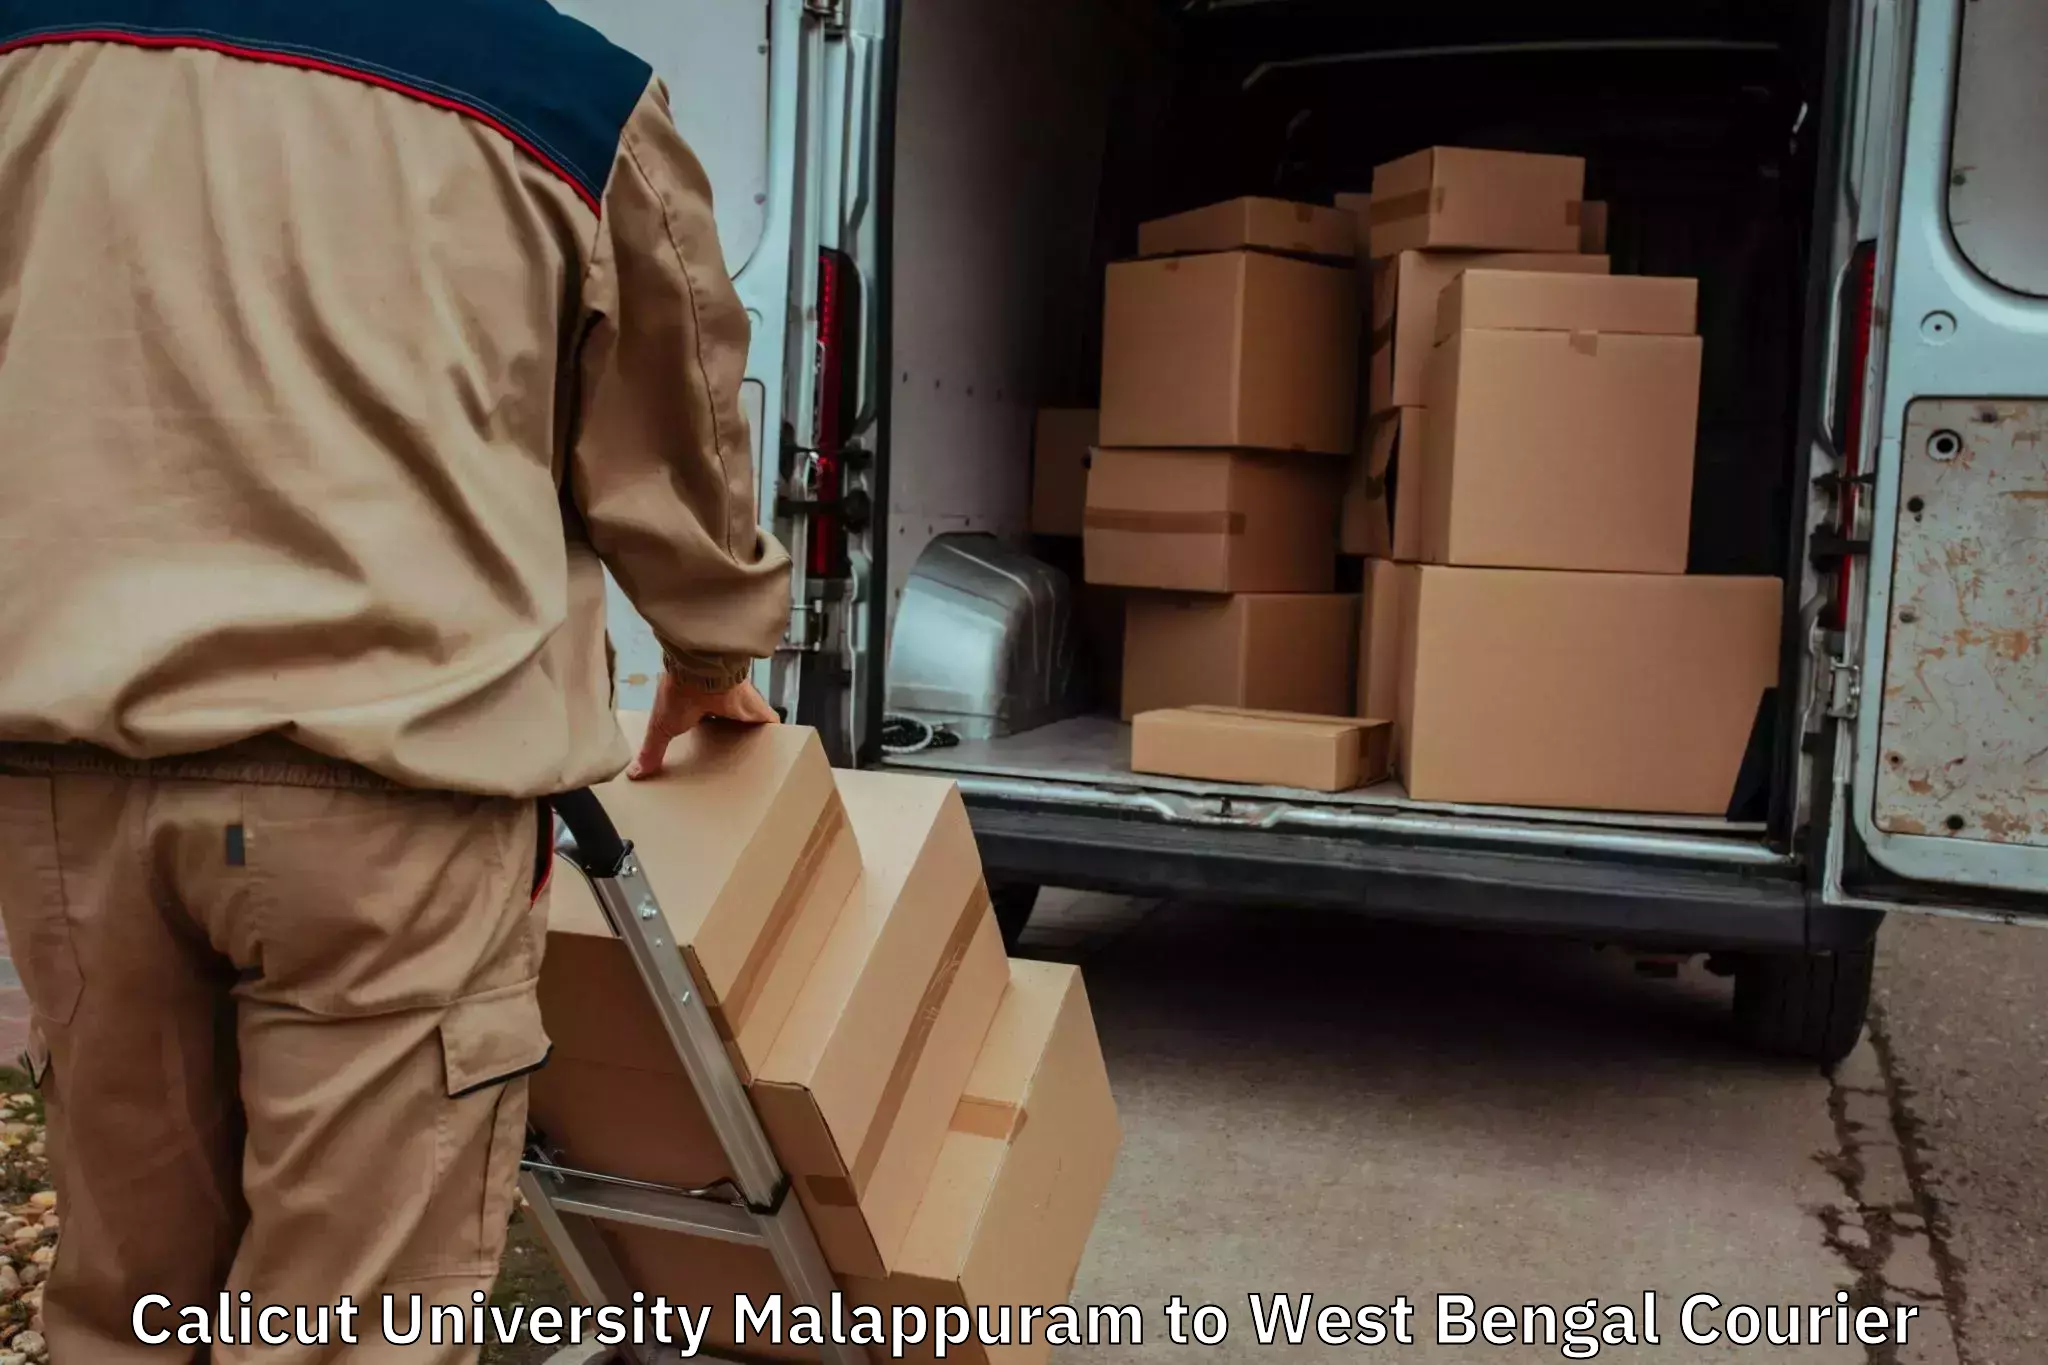 Furniture moving assistance Calicut University Malappuram to Udaynarayanpur